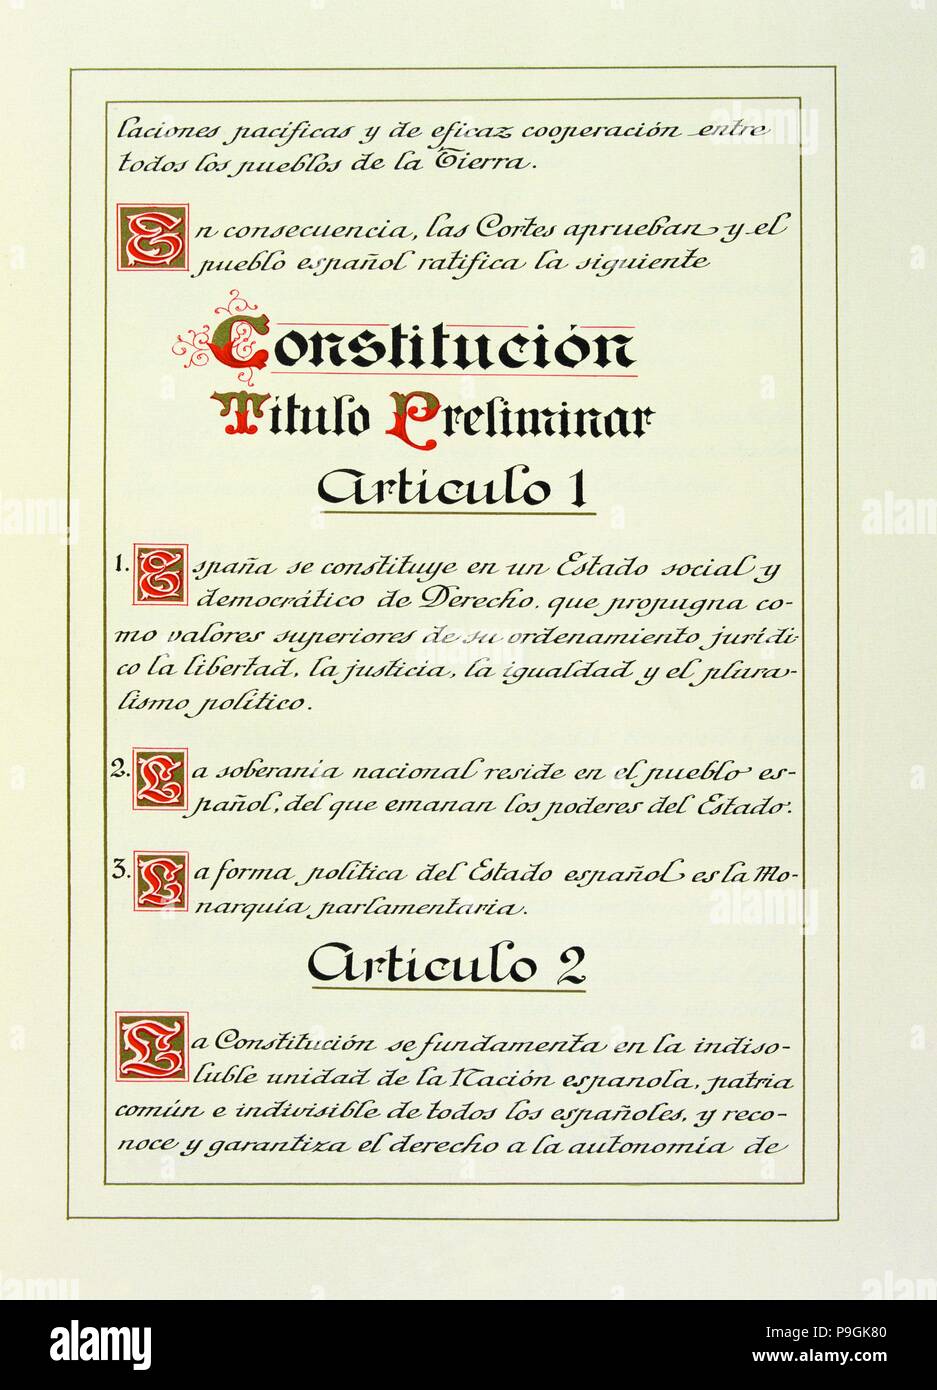 Titolo preliminare, articolo 1 della Costituzione spagnola di 1978. Foto Stock